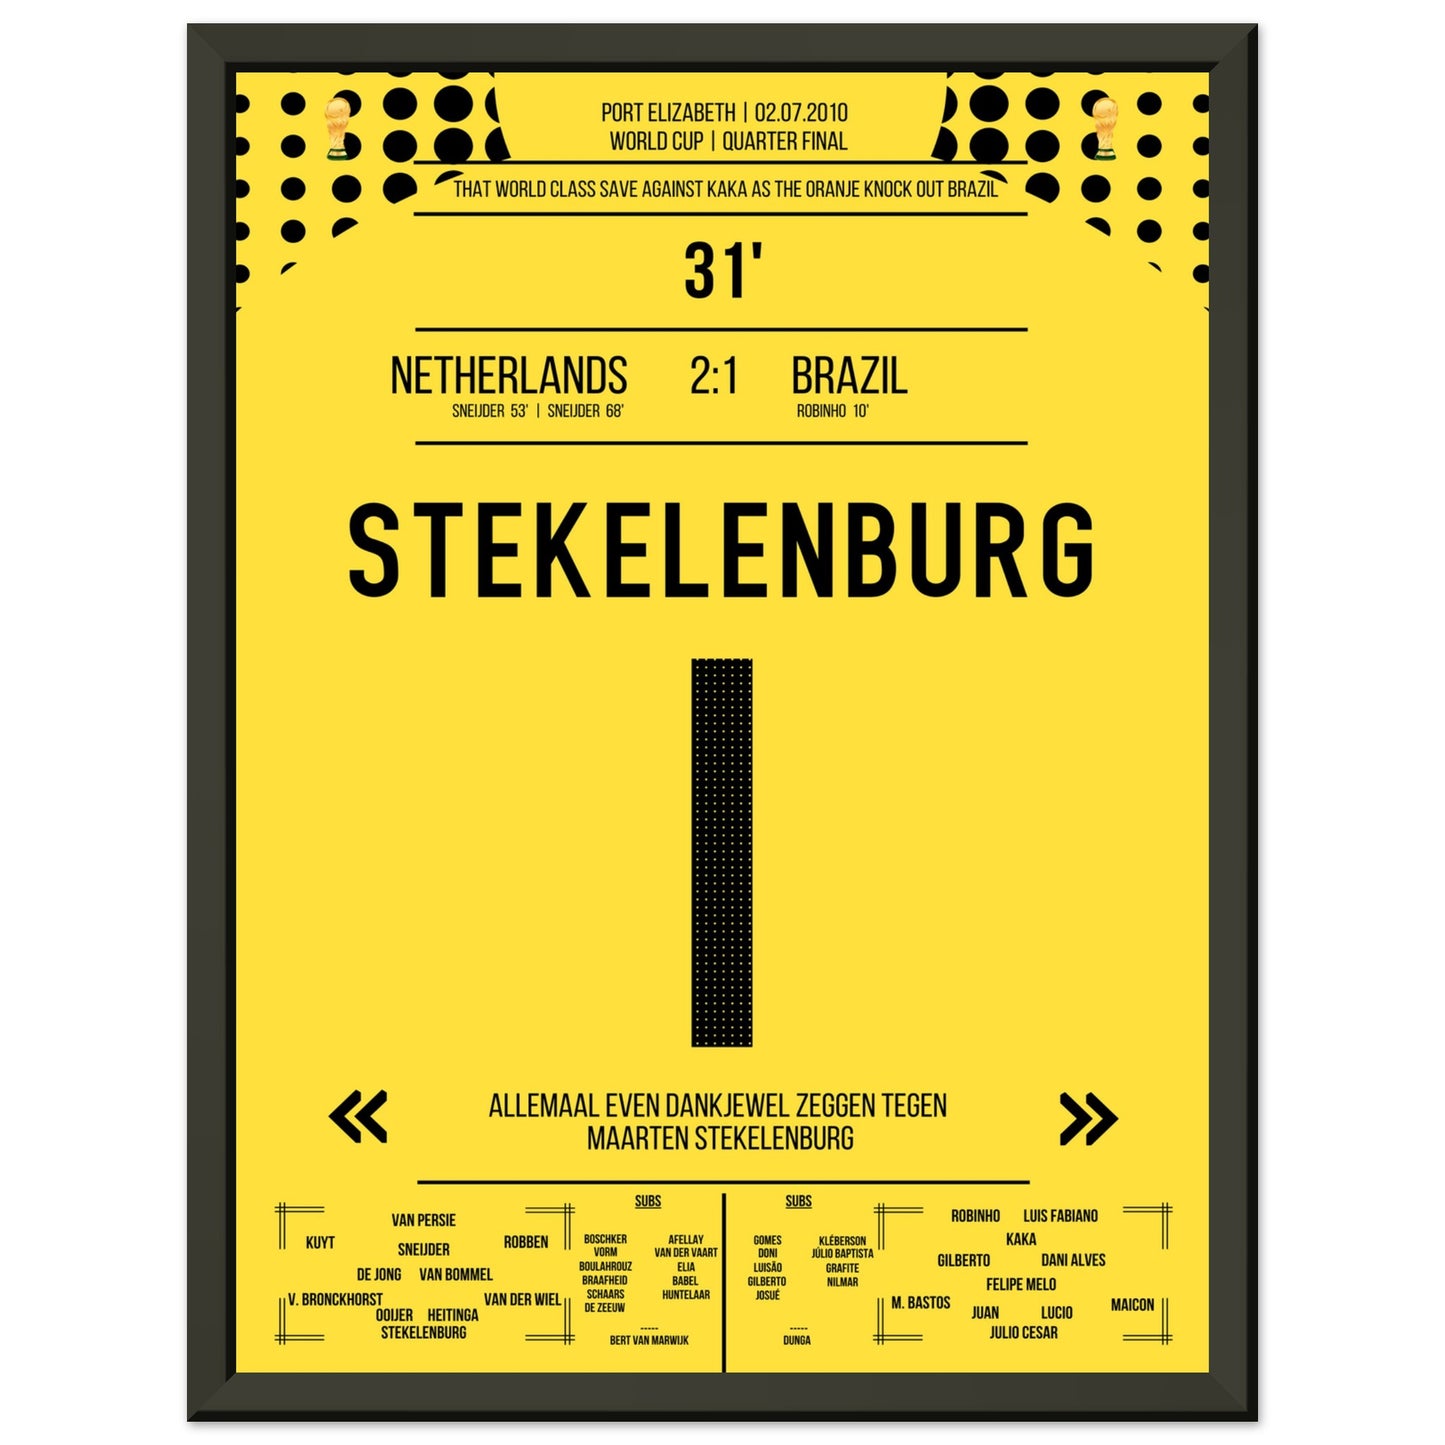 Stekelenburg's Weltklasse Aktion gegen Kaka bei der WM 2010 Kommentar-Version